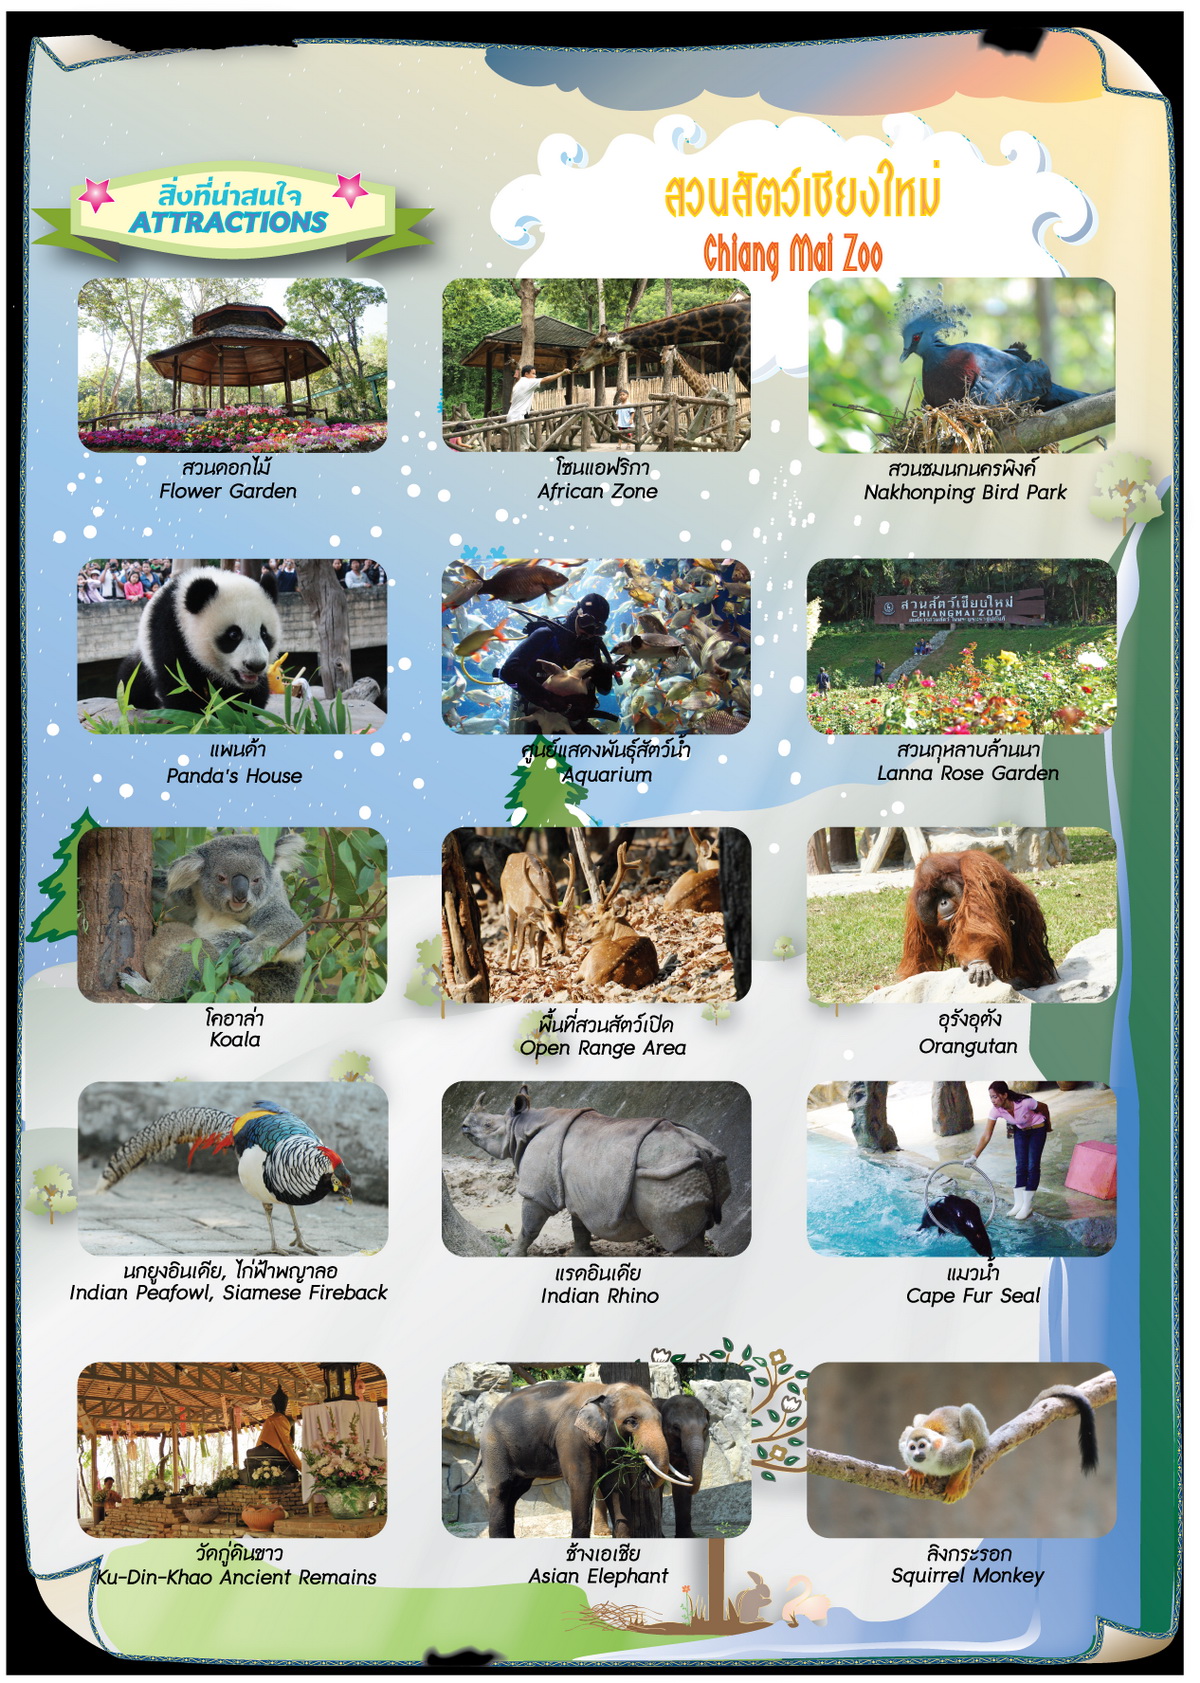 chiangmai zoo, chiang mai zoo, attractions in chiang mai